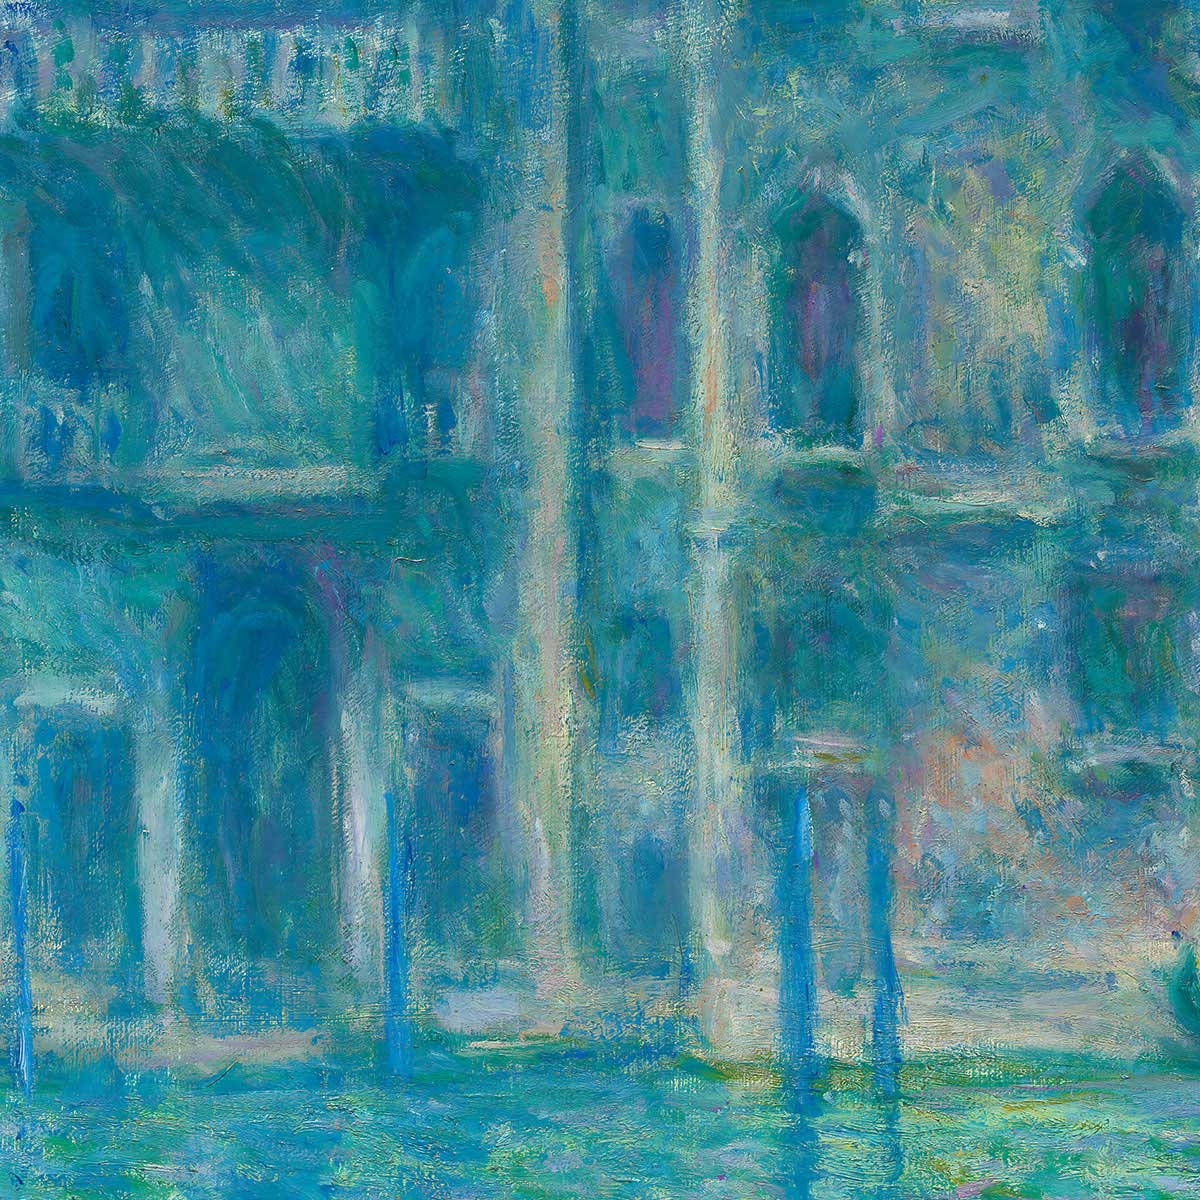 Palazzo da Mula, Venice by Claude Monet Art Exhibition Poster